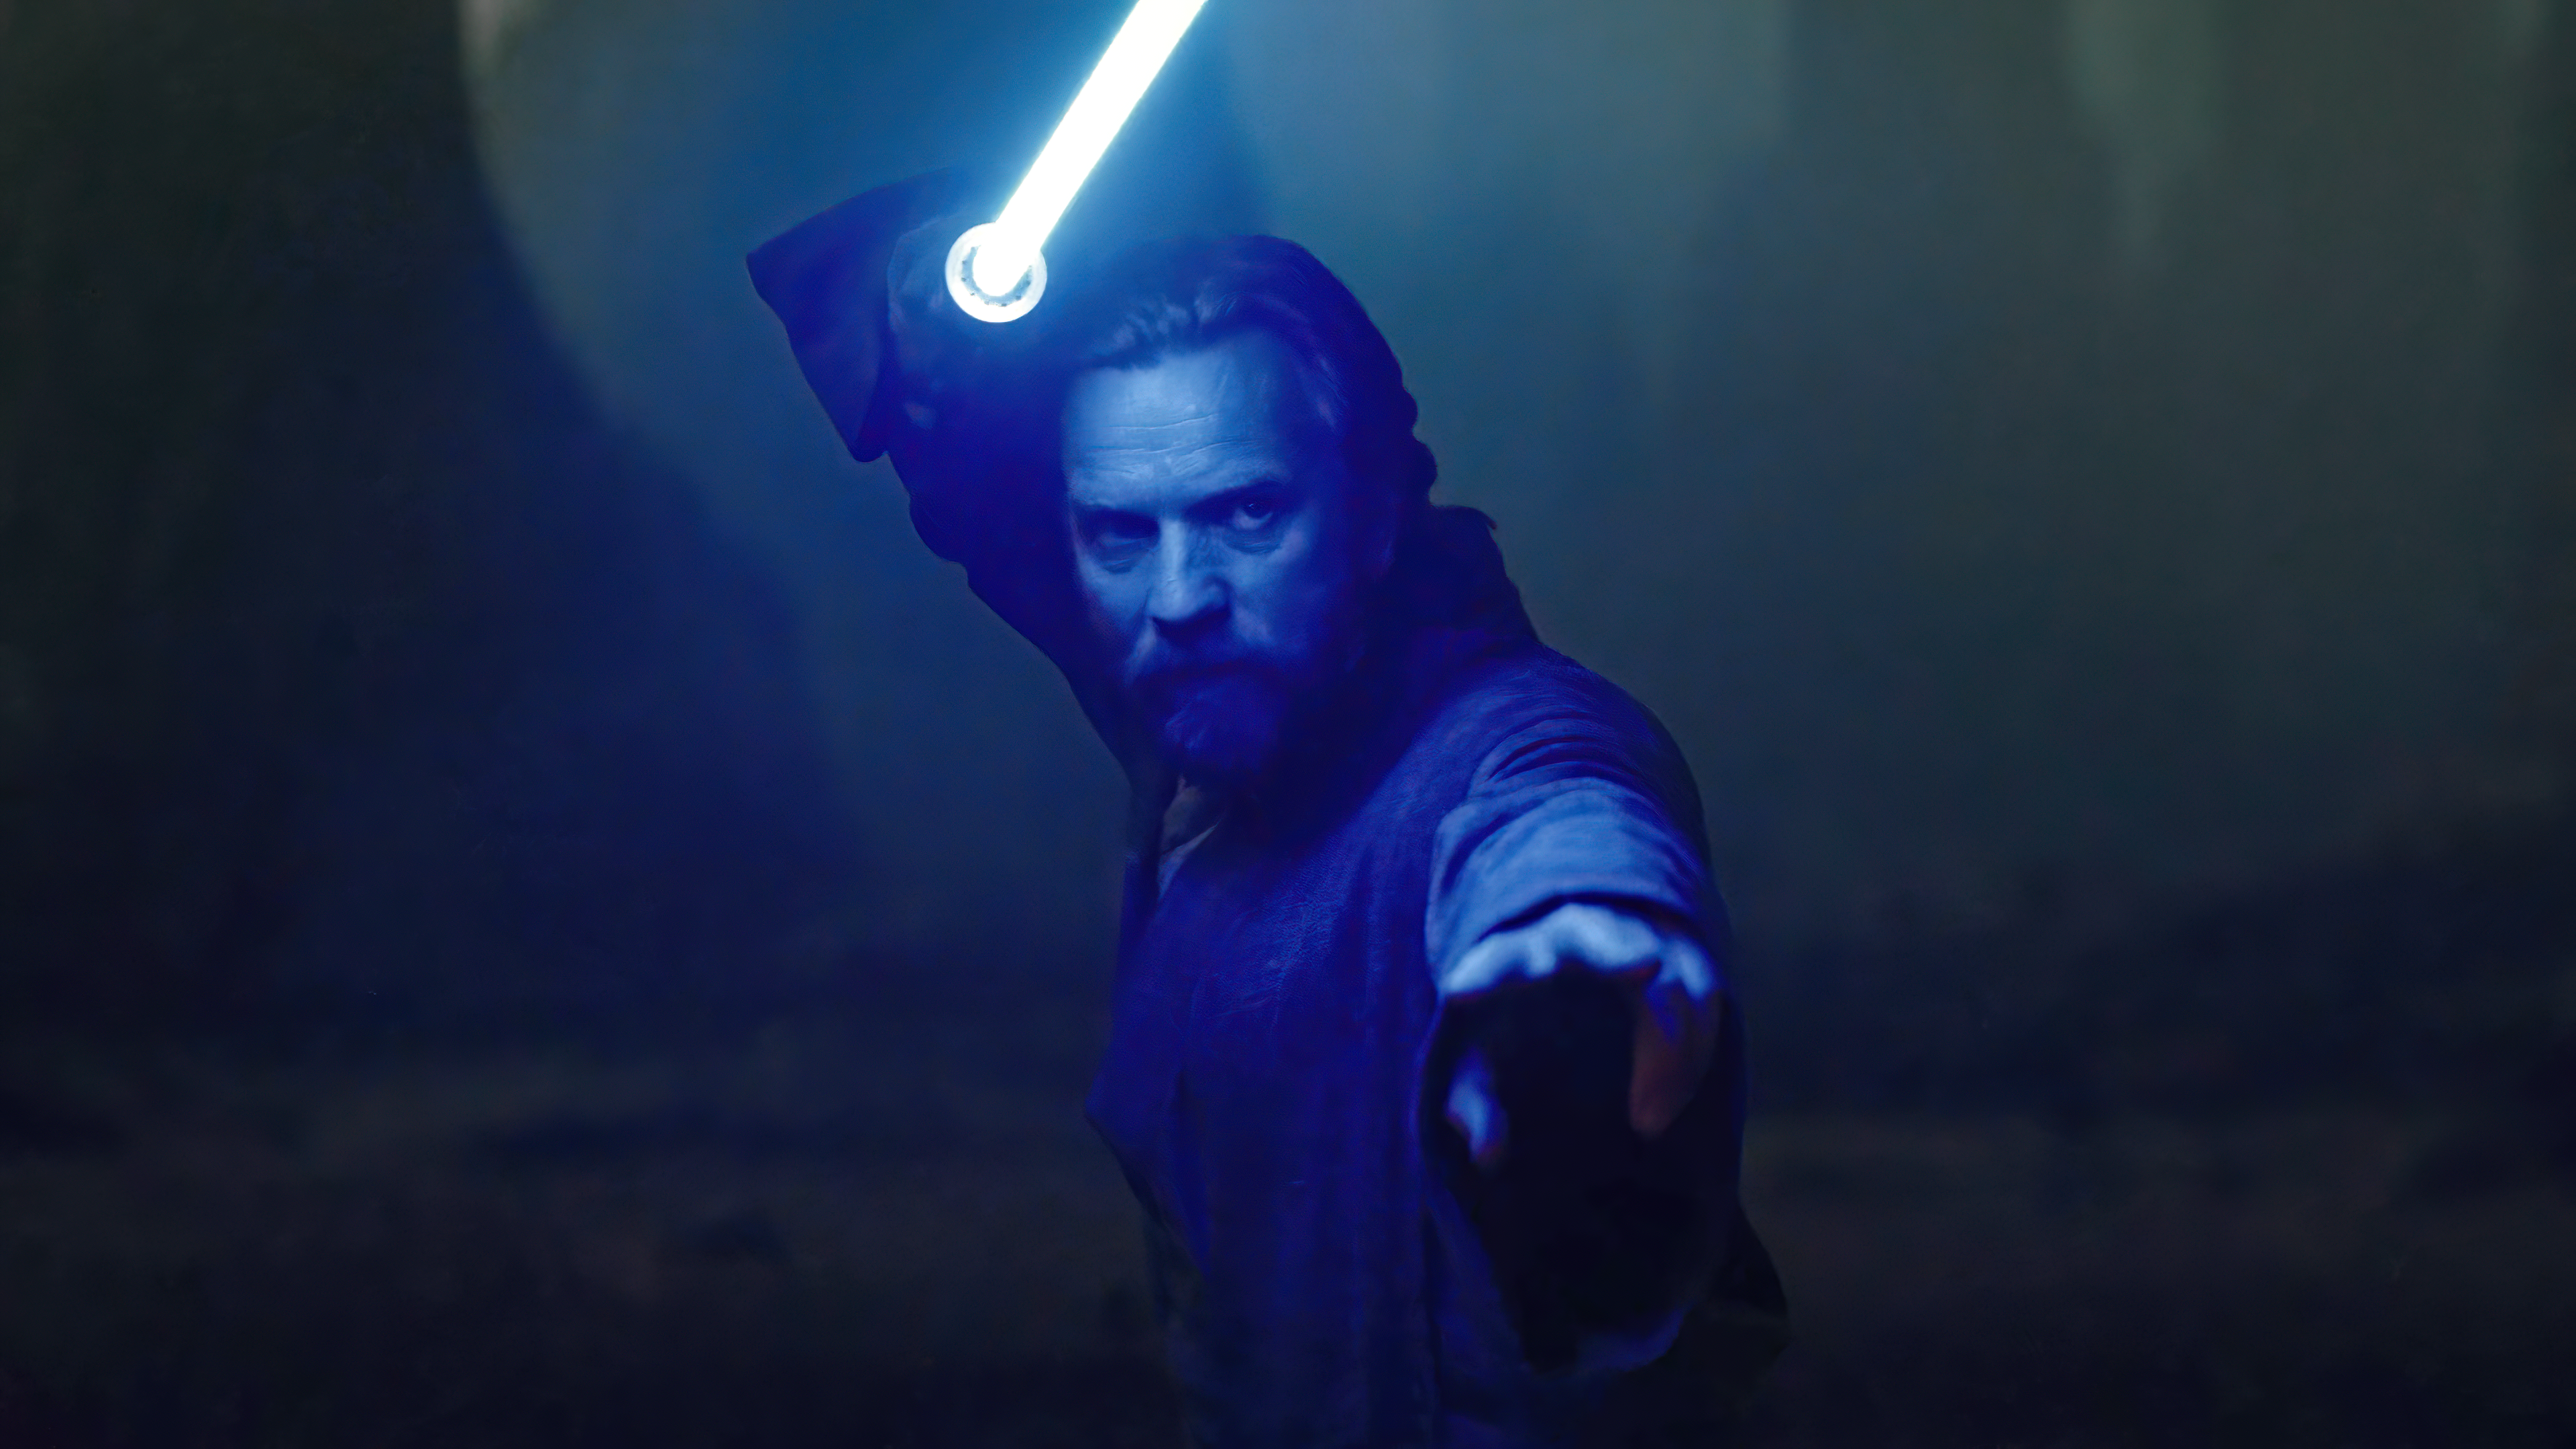 Ewan McGregor as Obi Wan Kenobi 4K HD ObiWan Kenobi Wallpapers  HD  Wallpapers  ID 102332